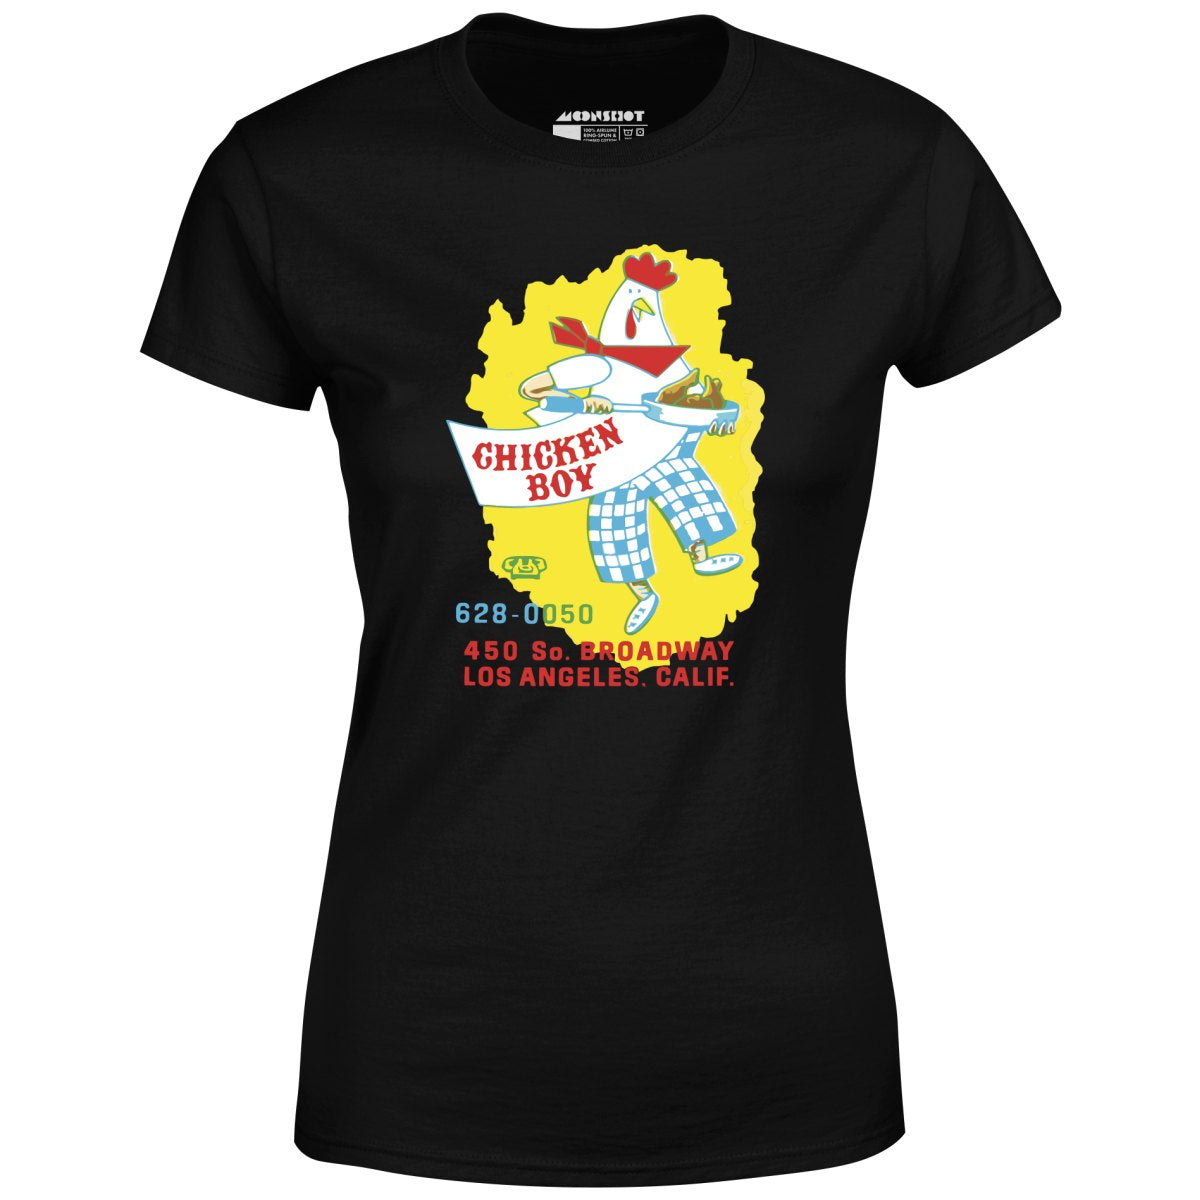 Chicken Boy - Los Angeles, CA - Vintage Restaurant - Women's T-Shirt